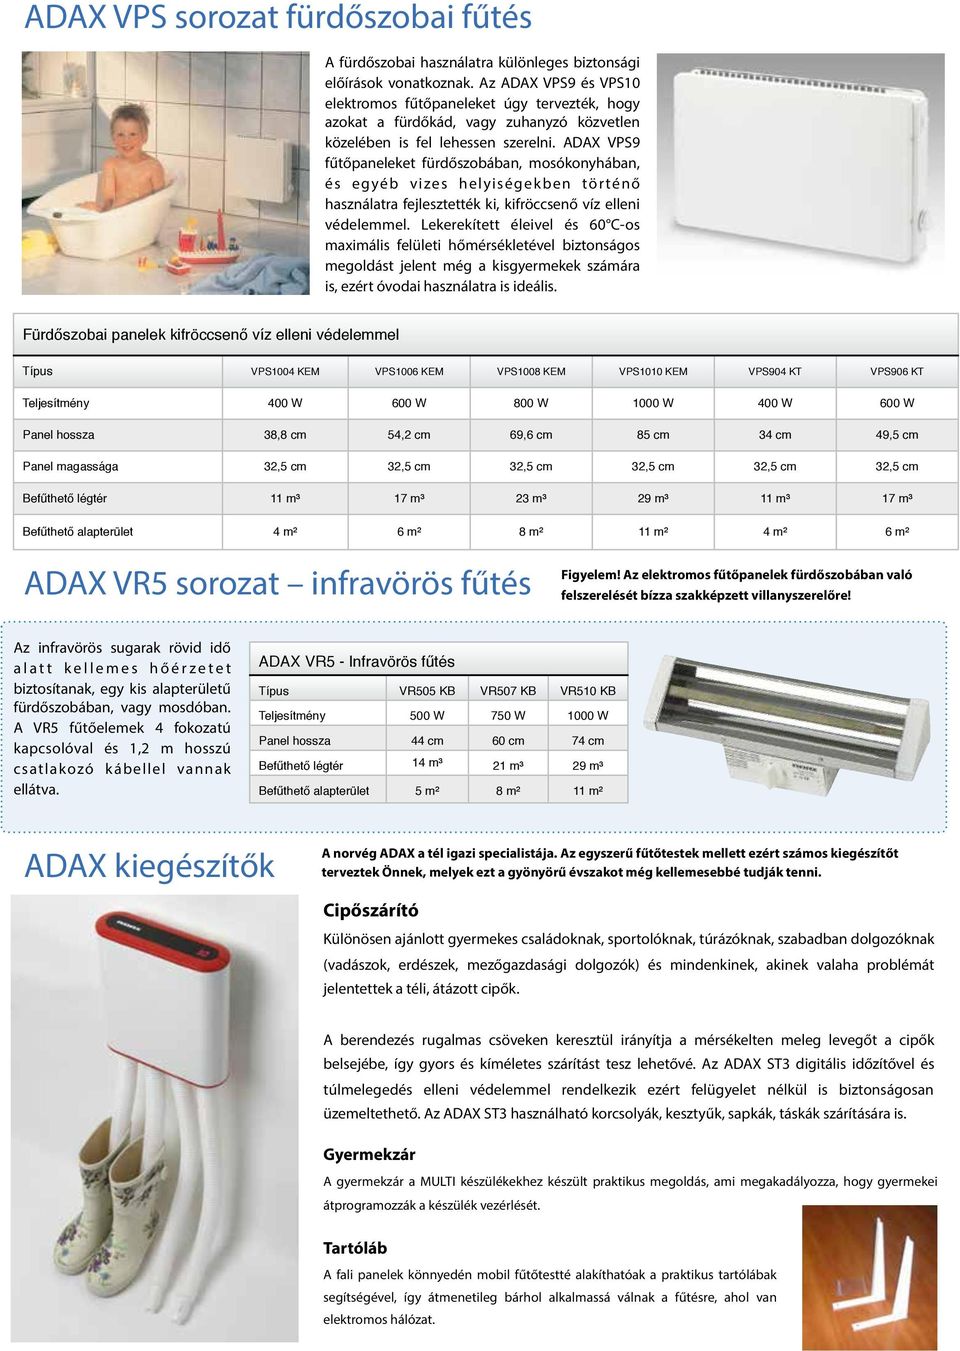 ADAX VPS9 fűtőpaneleket fürdőszobában, mosókonyhában, és egyéb vizes helyiségekben történő használatra fejlesztették ki, kifröccsenő víz elleni védelemmel.